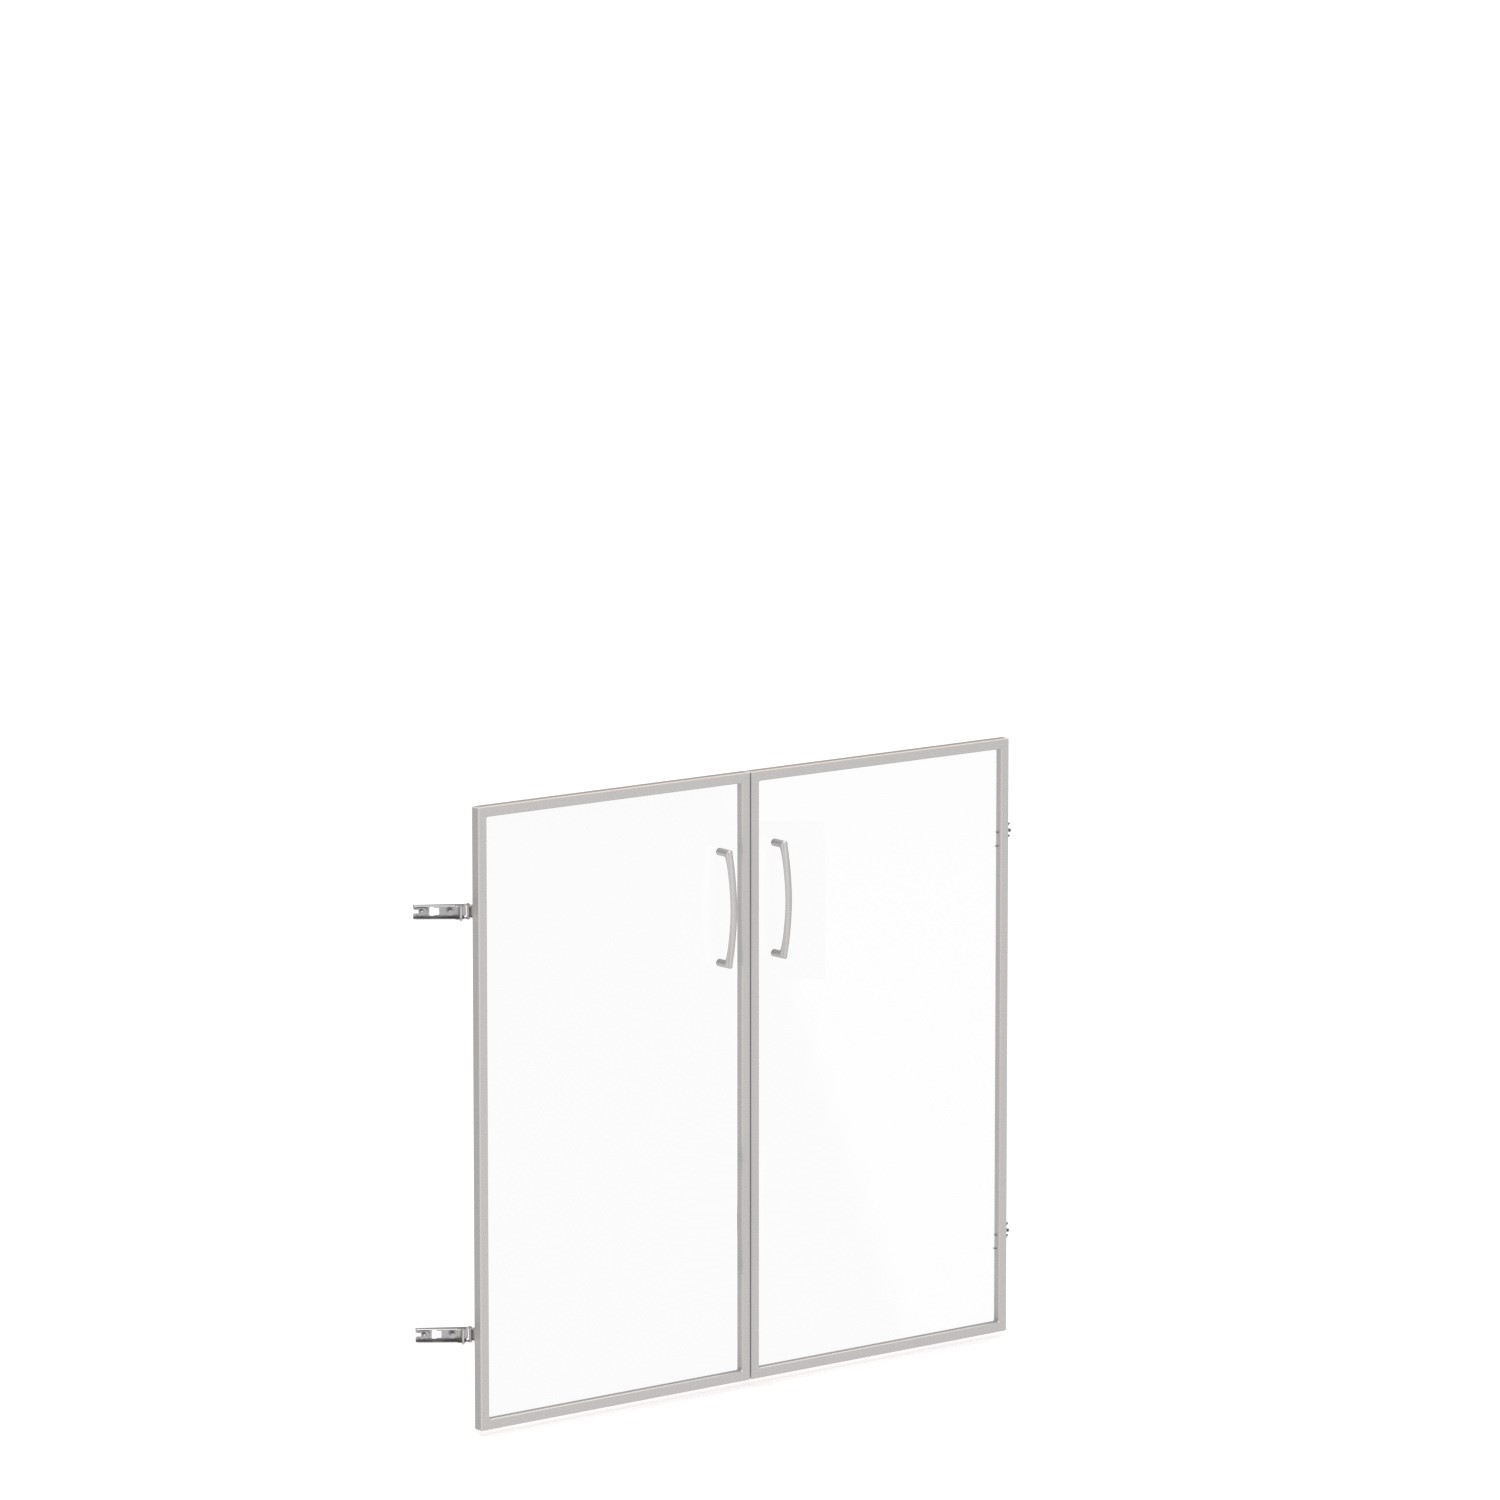 Skleněné dveře v AL rámu, výška 33,7cm, šířka 78,6/118,6cm (Skleněné dveře v hliníkovém rámu pro jednopolicovou skříň)